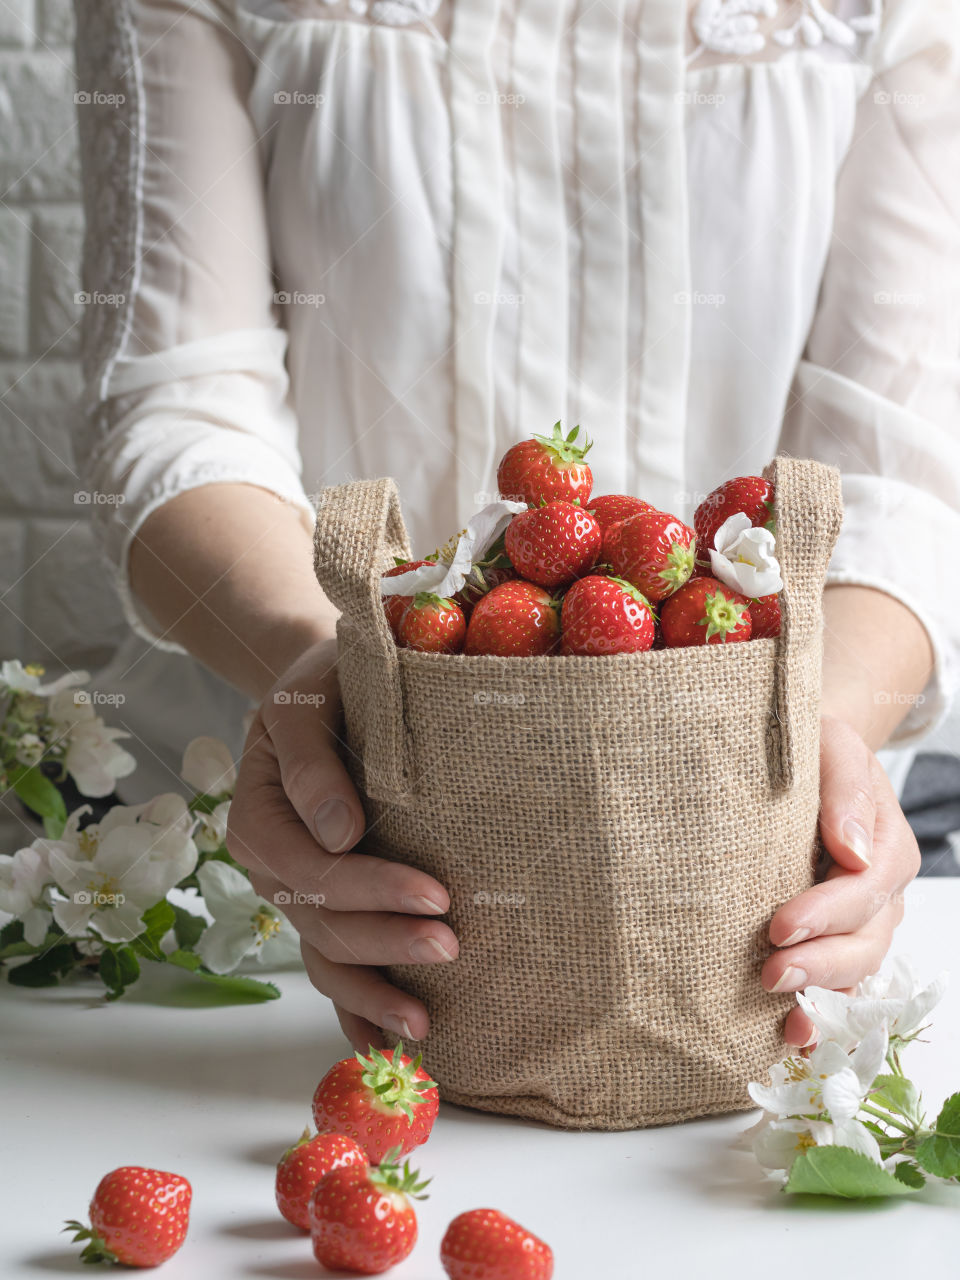 Holding a jute bag full of ripe fresh strawberries 